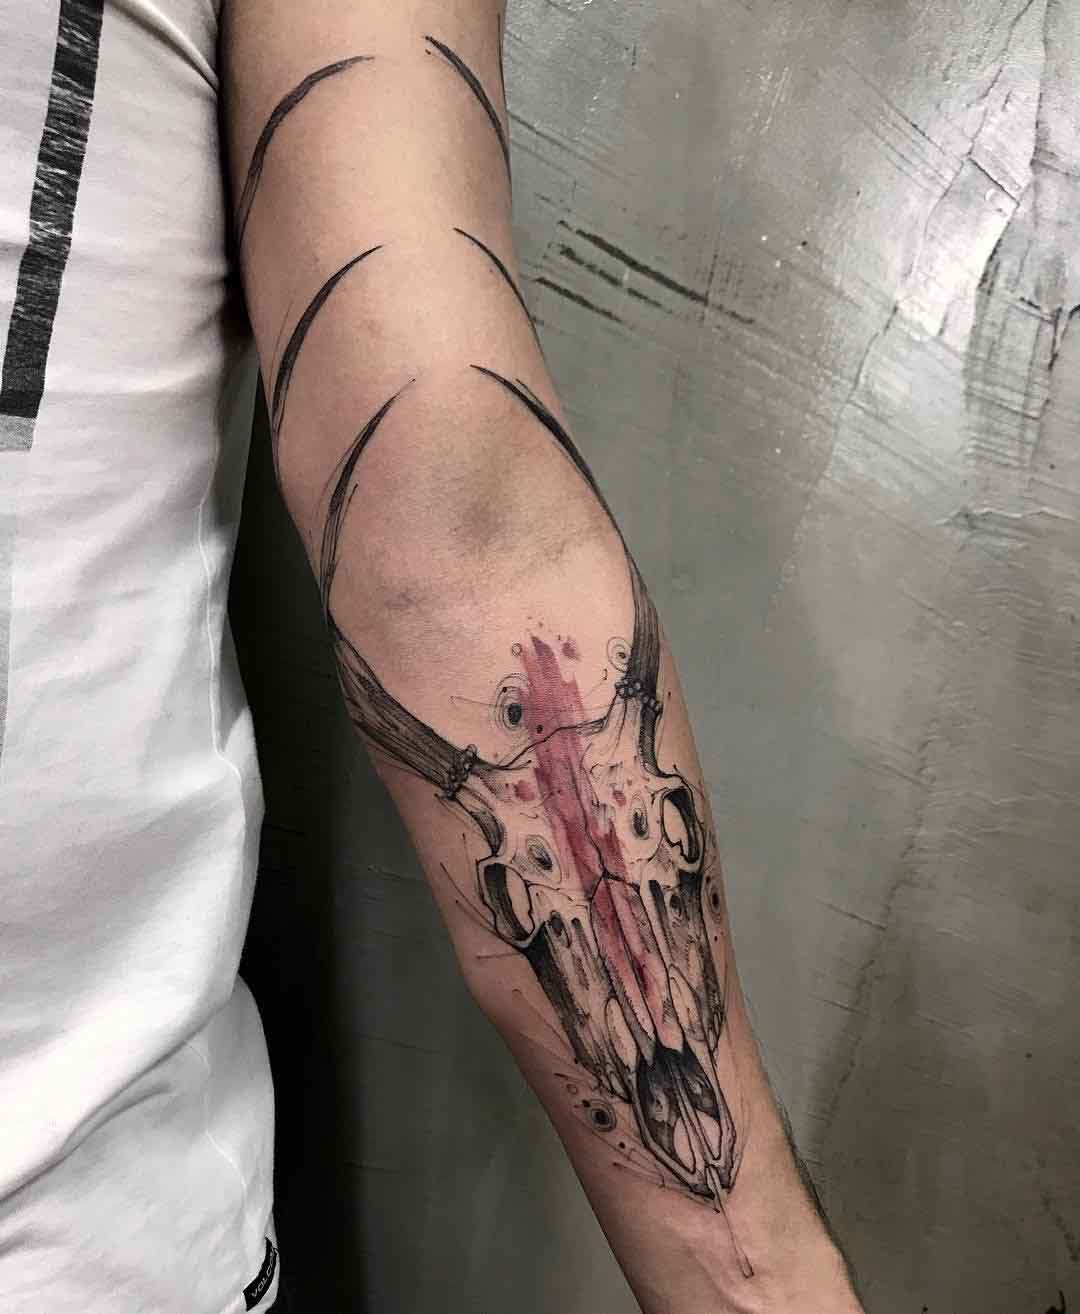 Arm Tattoo Deer Skull - Best Tattoo Ideas Gallery